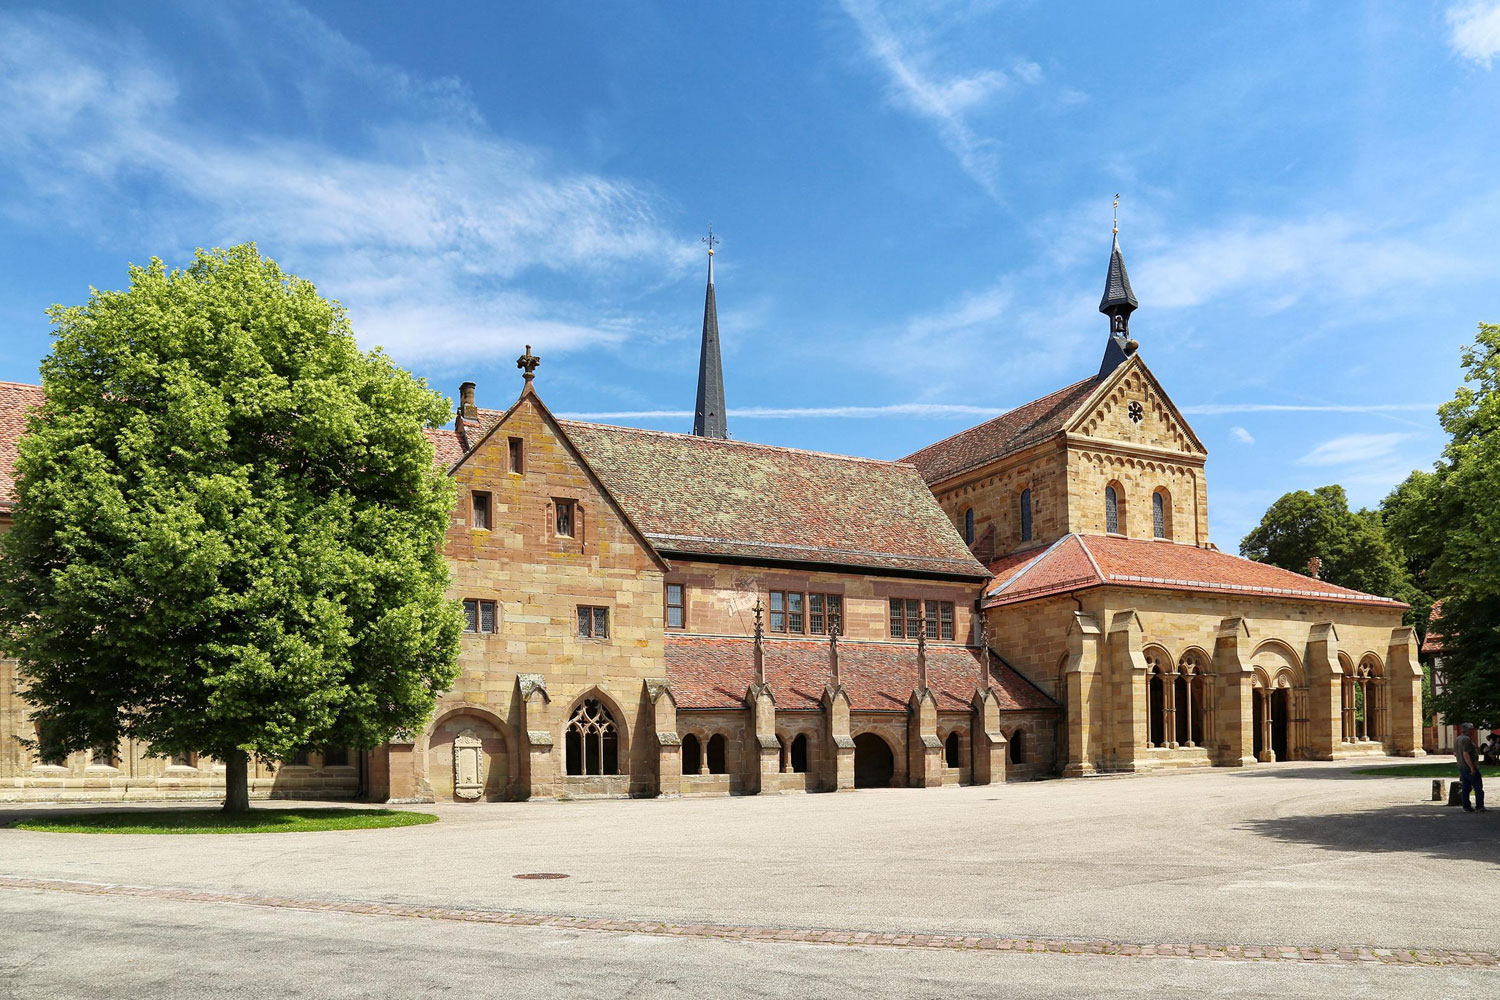 Bereits der erste Blick auf die über 800 Jahre alten Gemäuer des Klosters Maulbronn hinterlässt Ehrfurcht. 1147 wurde hier der Grundstein gelegt.